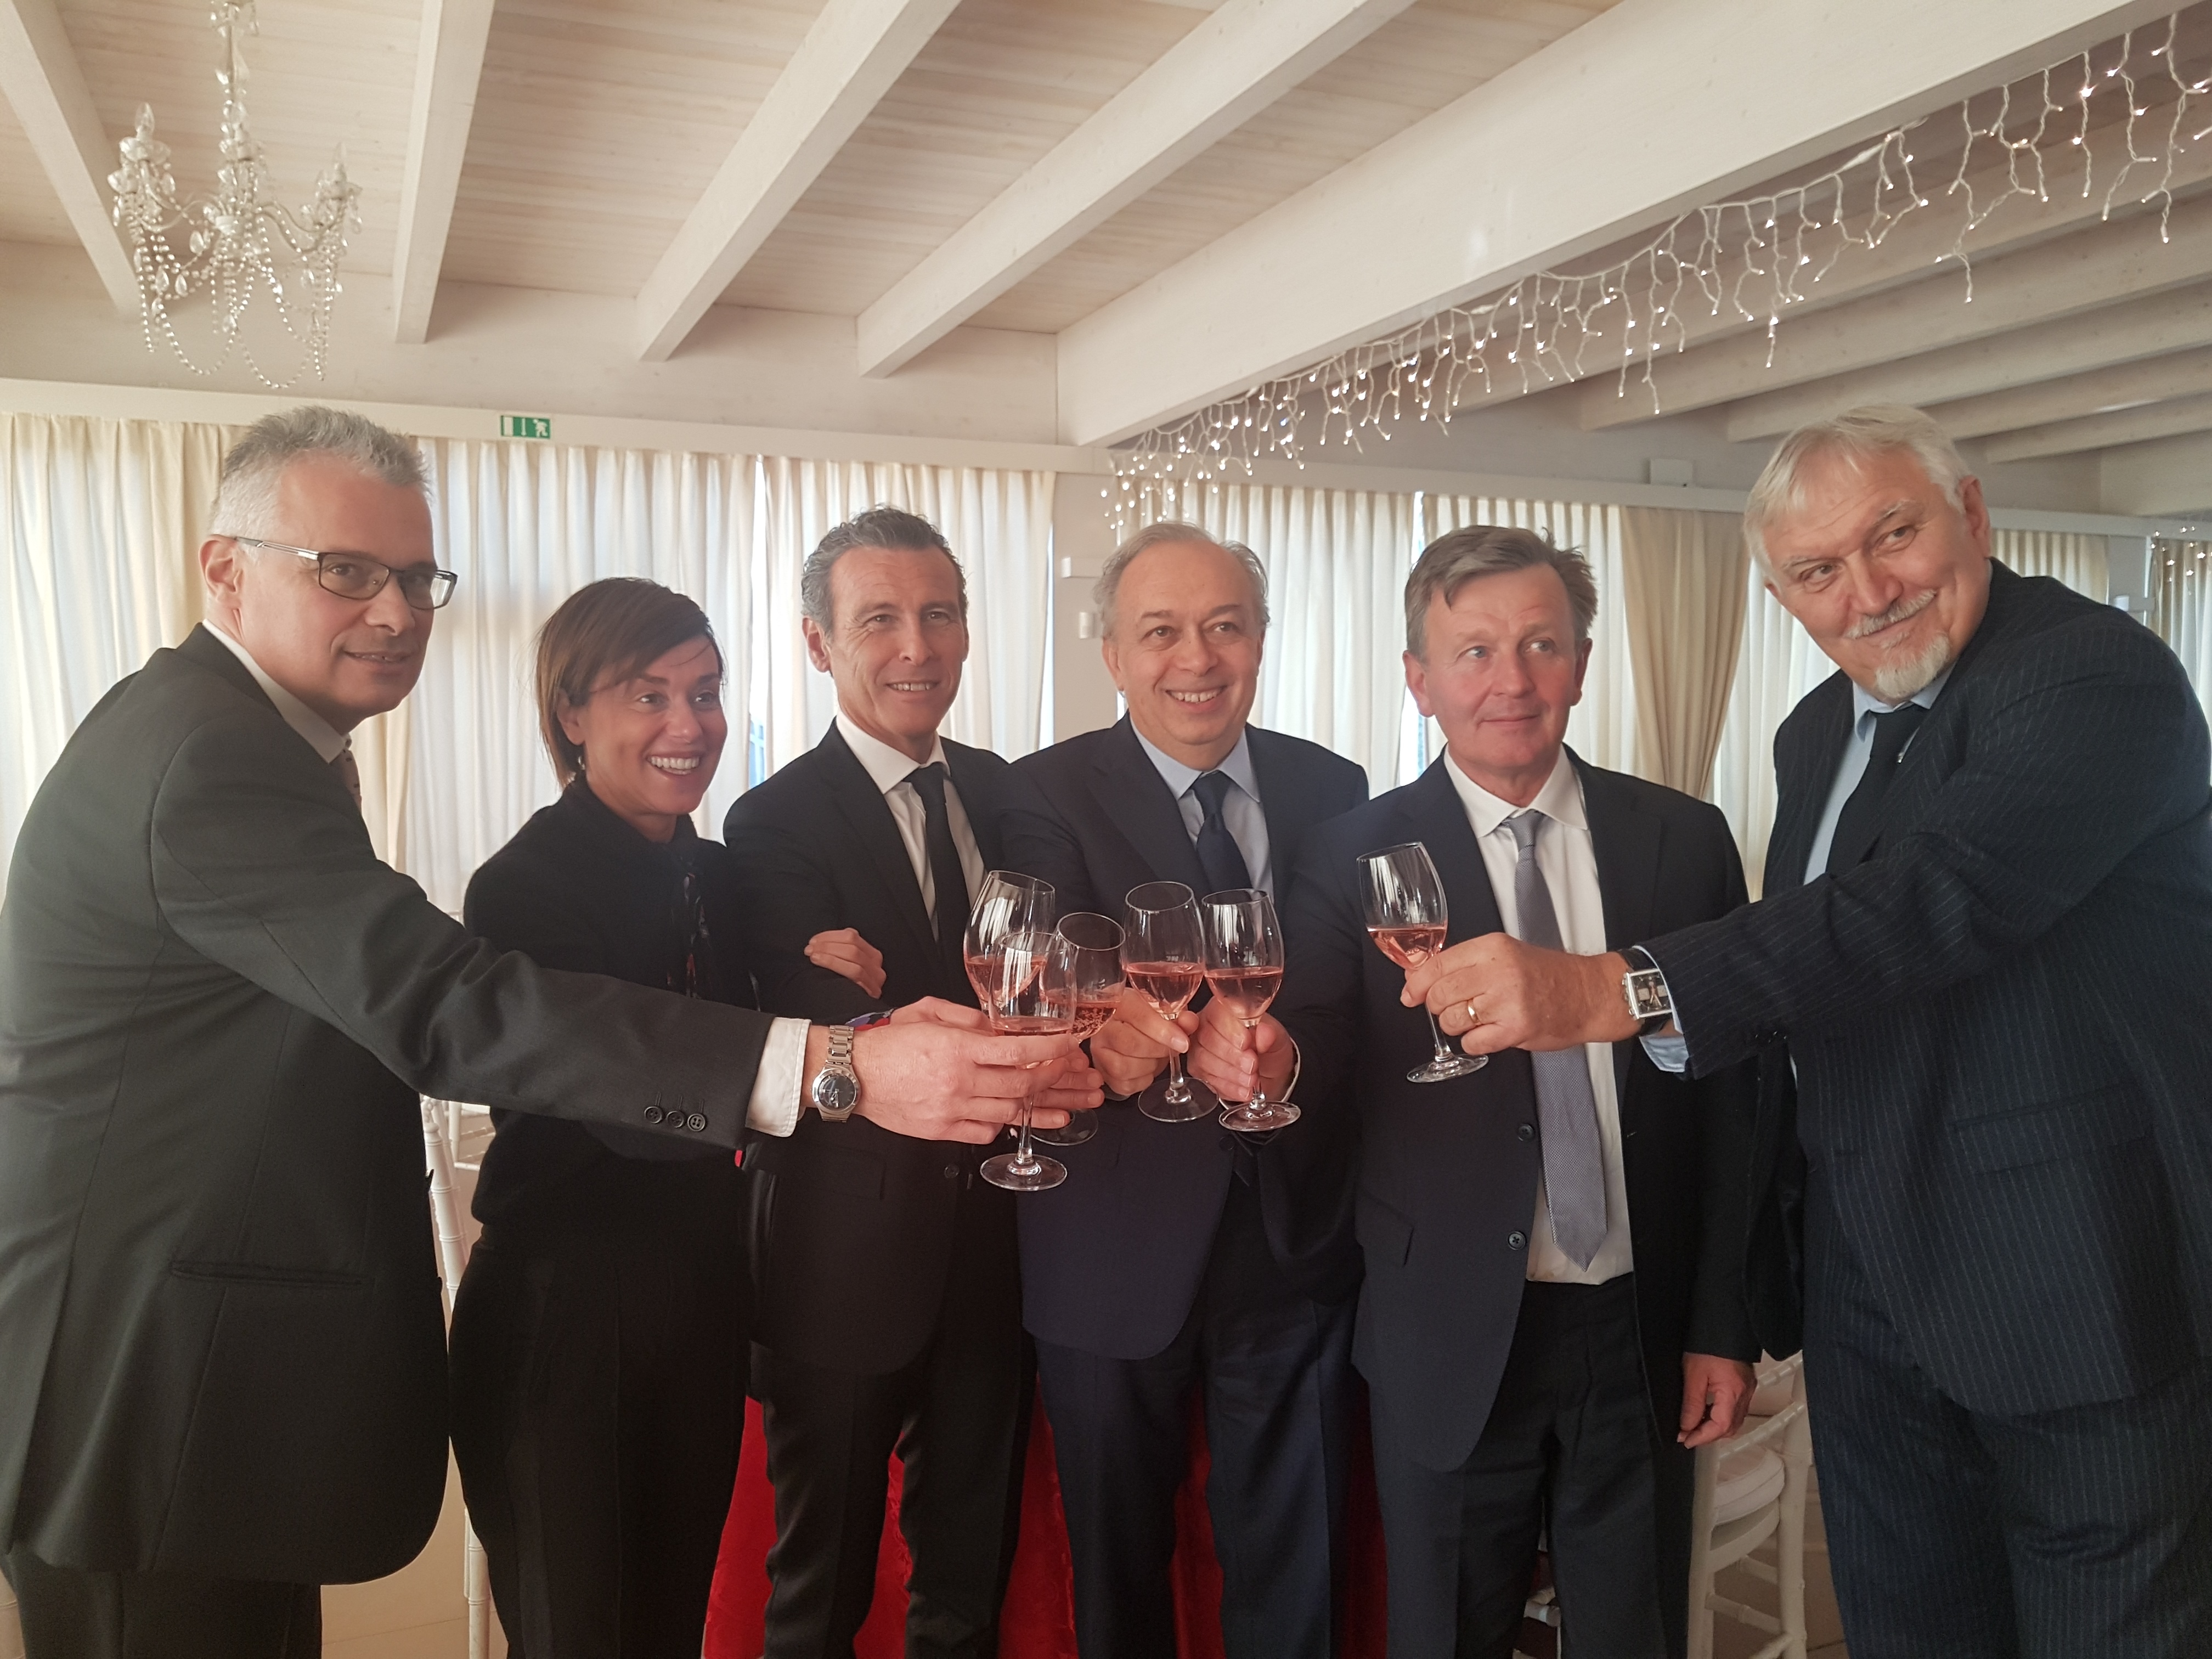 Cantine Riunite & Civ si conferma leader del settore vitivinicolo con 600 milioni di fatturato